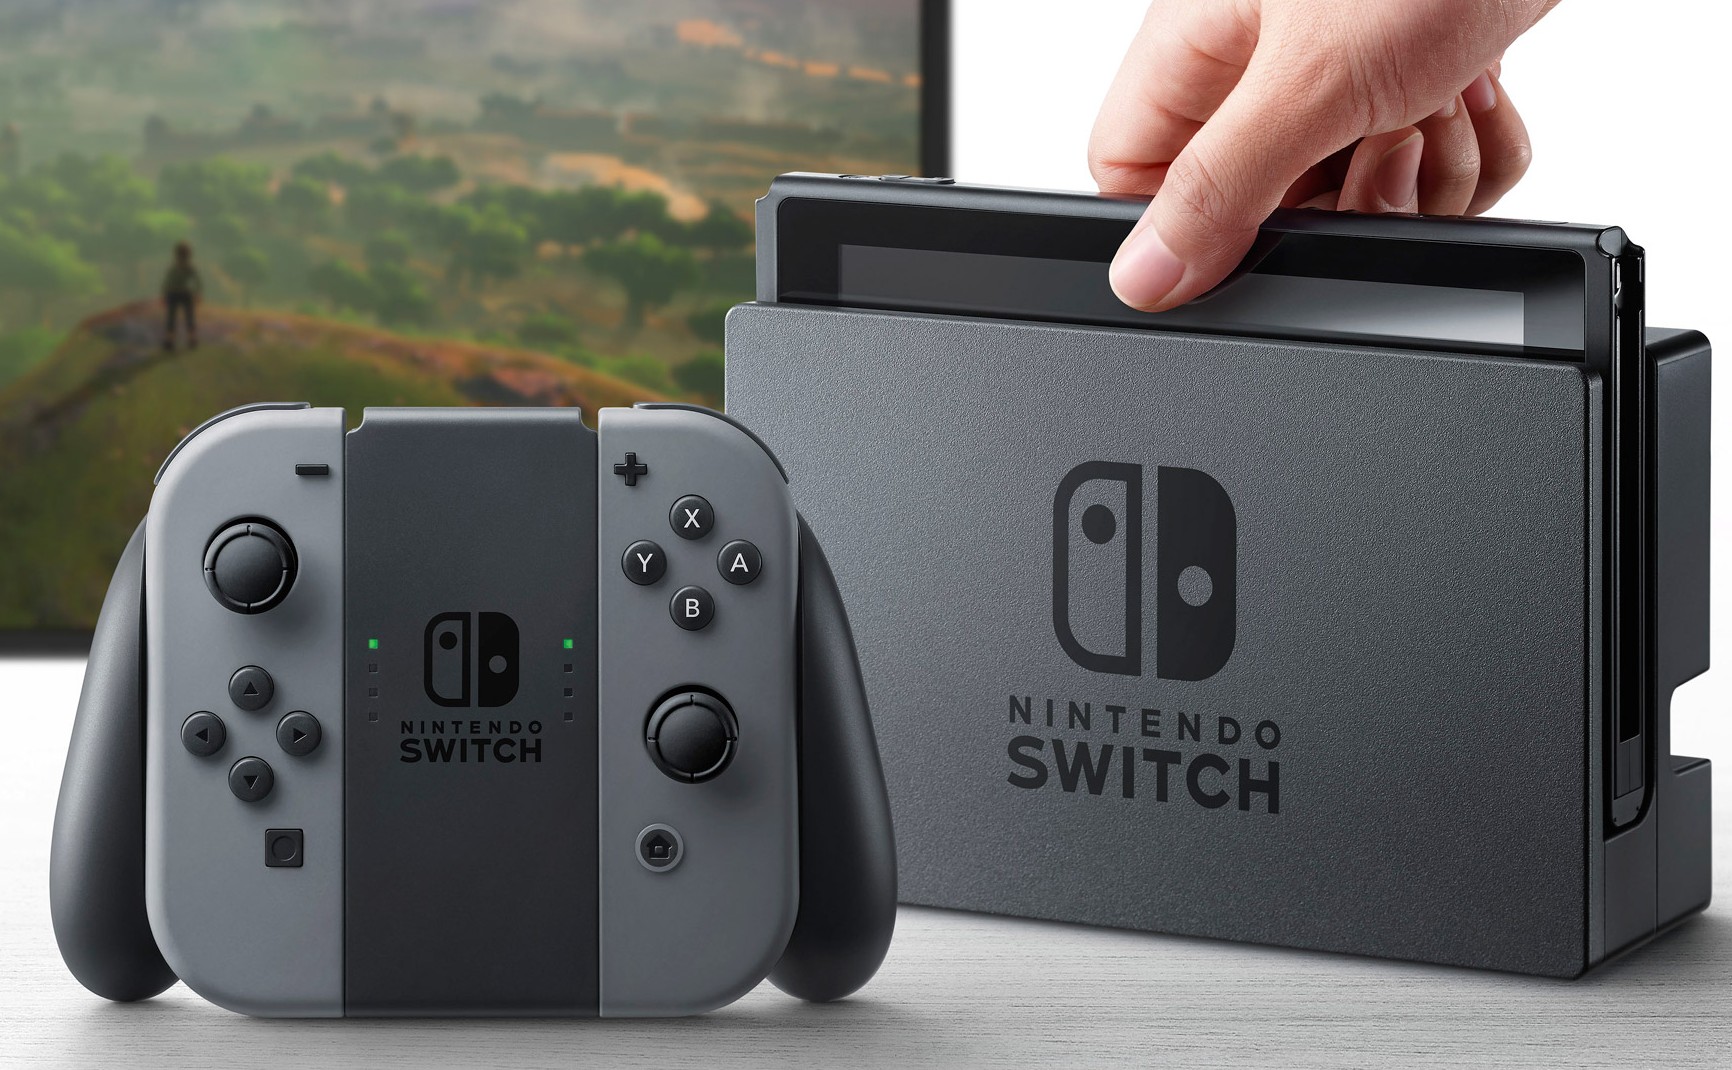 Máy Nintendo Switch bất ngờ bị lấy cắp dù chưa chính thức bán ra